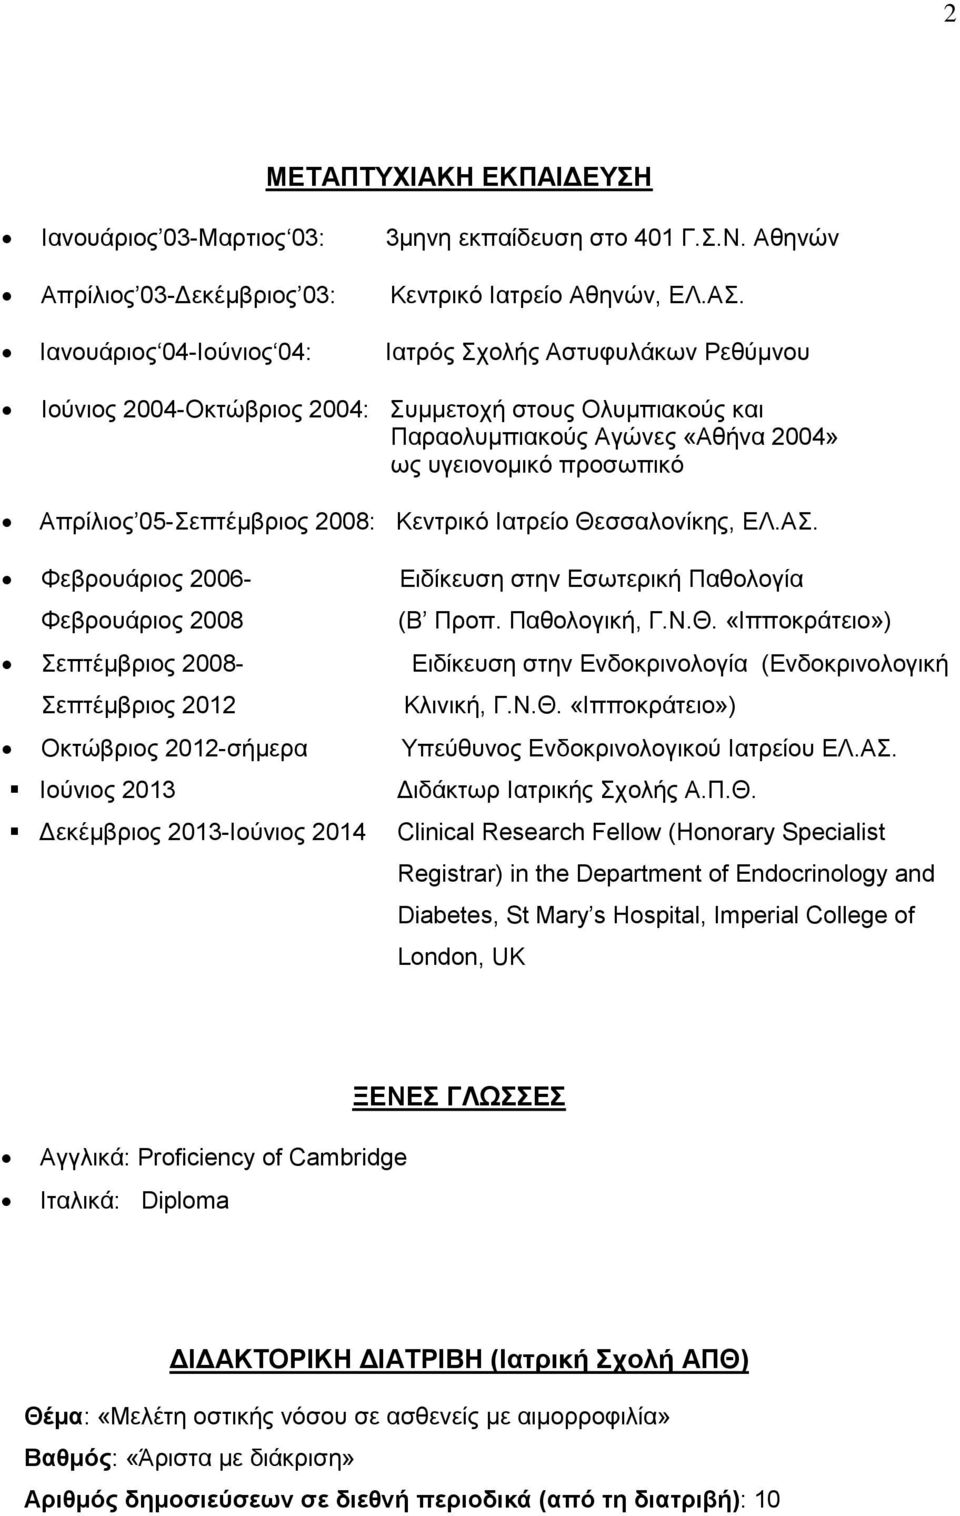 05-Σεπτέμβριος 2008: Κεντρικό Ιατρείο Θεσσαλονίκης, ΕΛ.ΑΣ. Φεβρουάριος 2006- Ειδίκευση στην Εσωτερική Παθολογία Φεβρουάριος 2008 (Β Προπ. Παθολογική, Γ.Ν.Θ. «Ιπποκράτειο») Σεπτέμβριος 2008- Ειδίκευση στην Ενδοκρινολογία (Ενδοκρινολογική Σεπτέμβριος 2012 Κλινική, Γ.